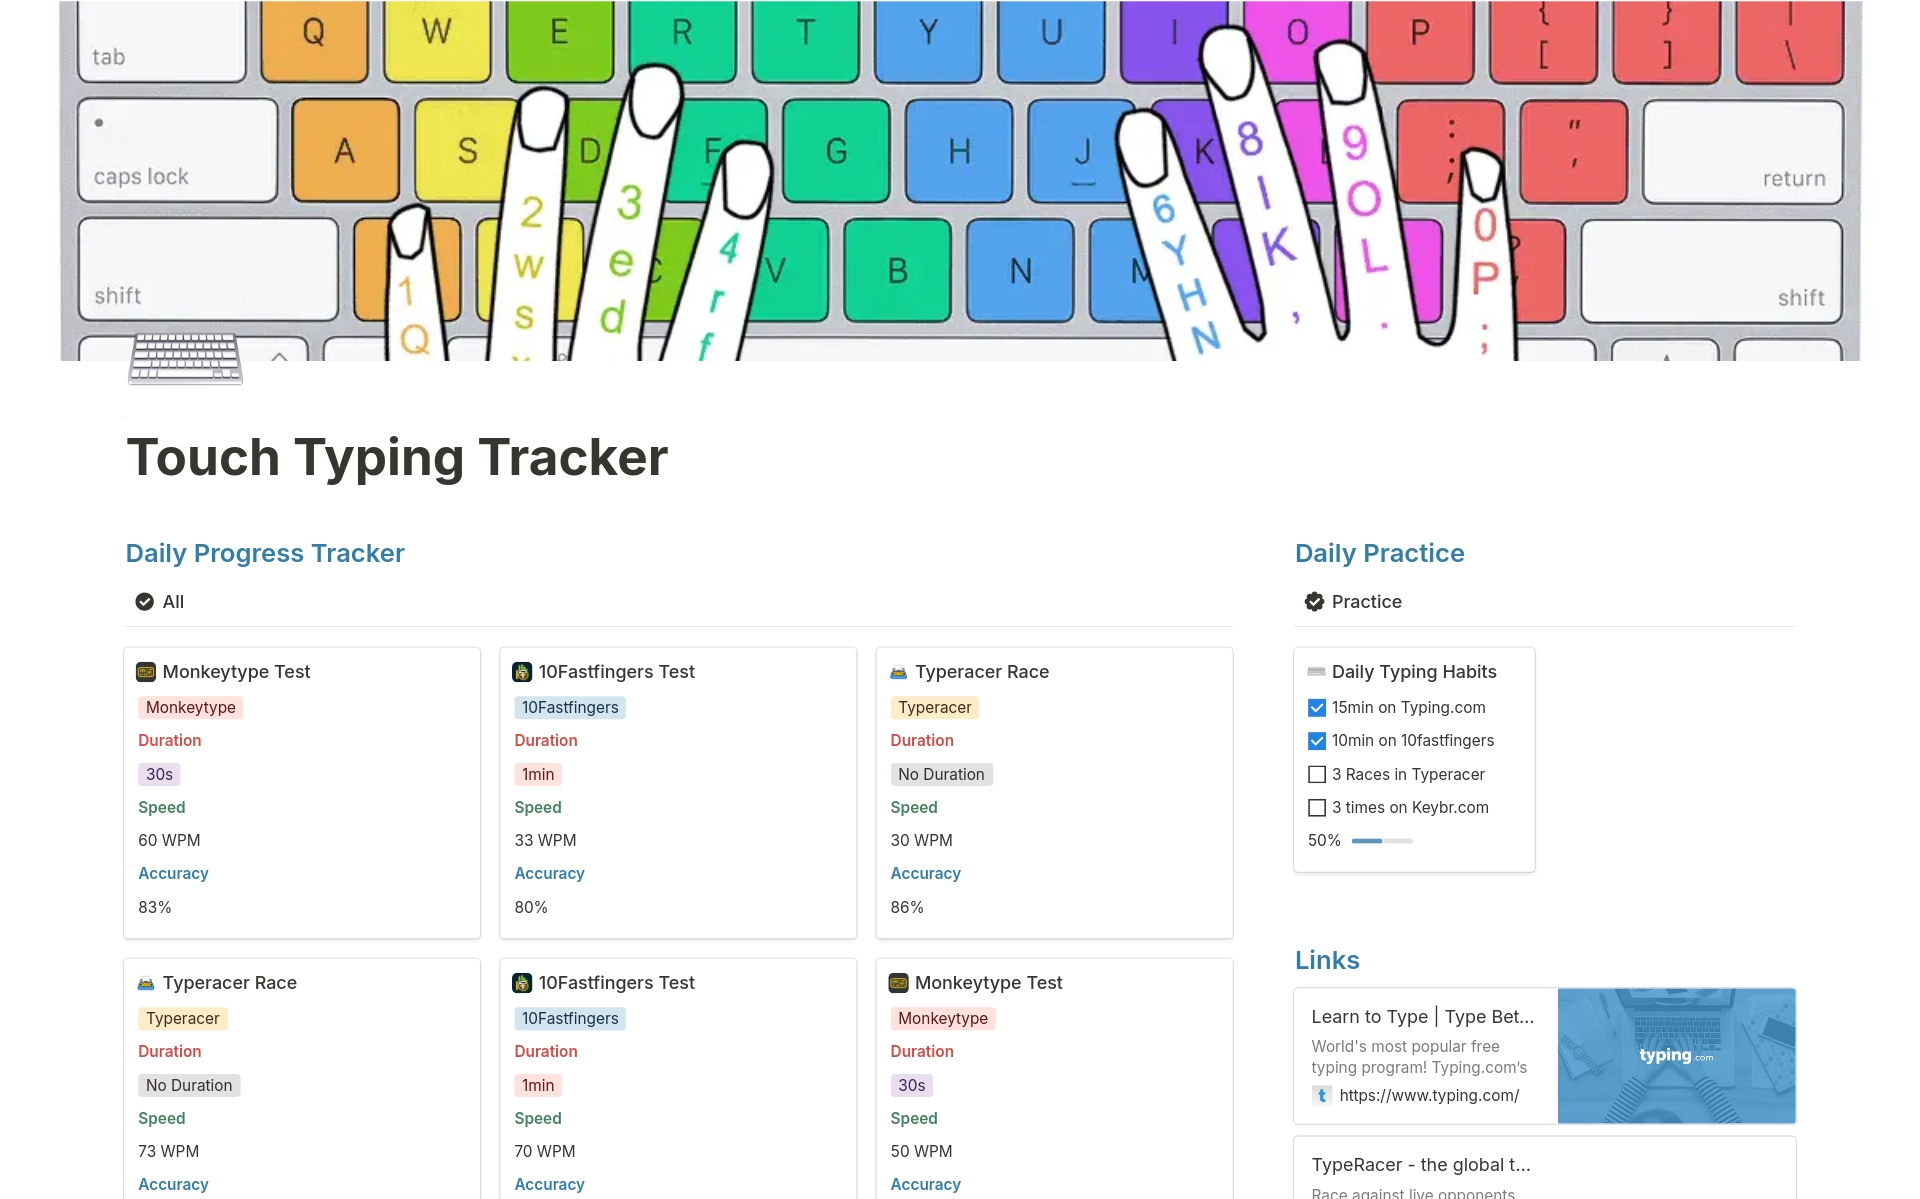 Aperçu du modèle de Touch Typing Tracker